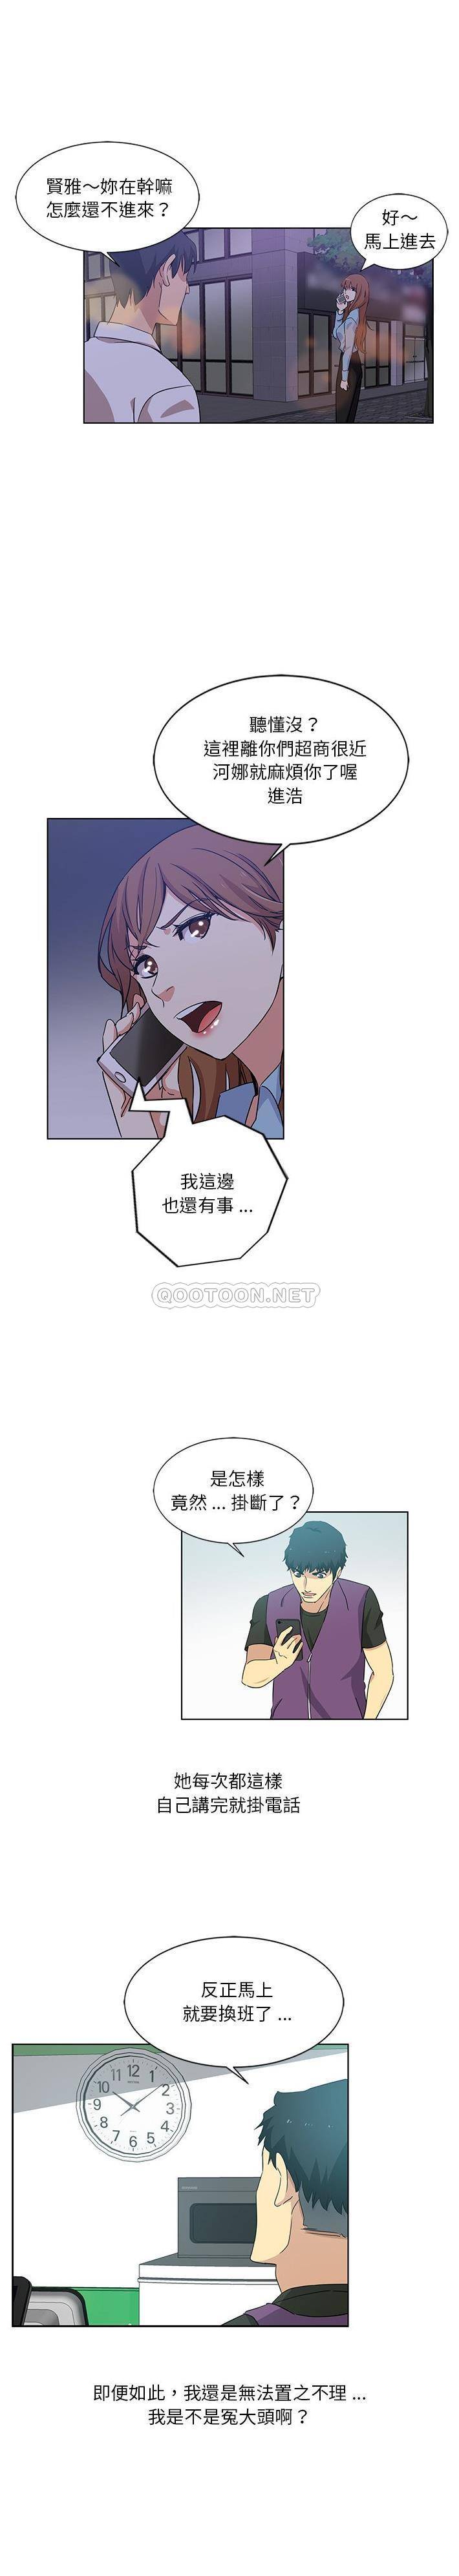 韩国污漫画 危險純友誼 第4话 4